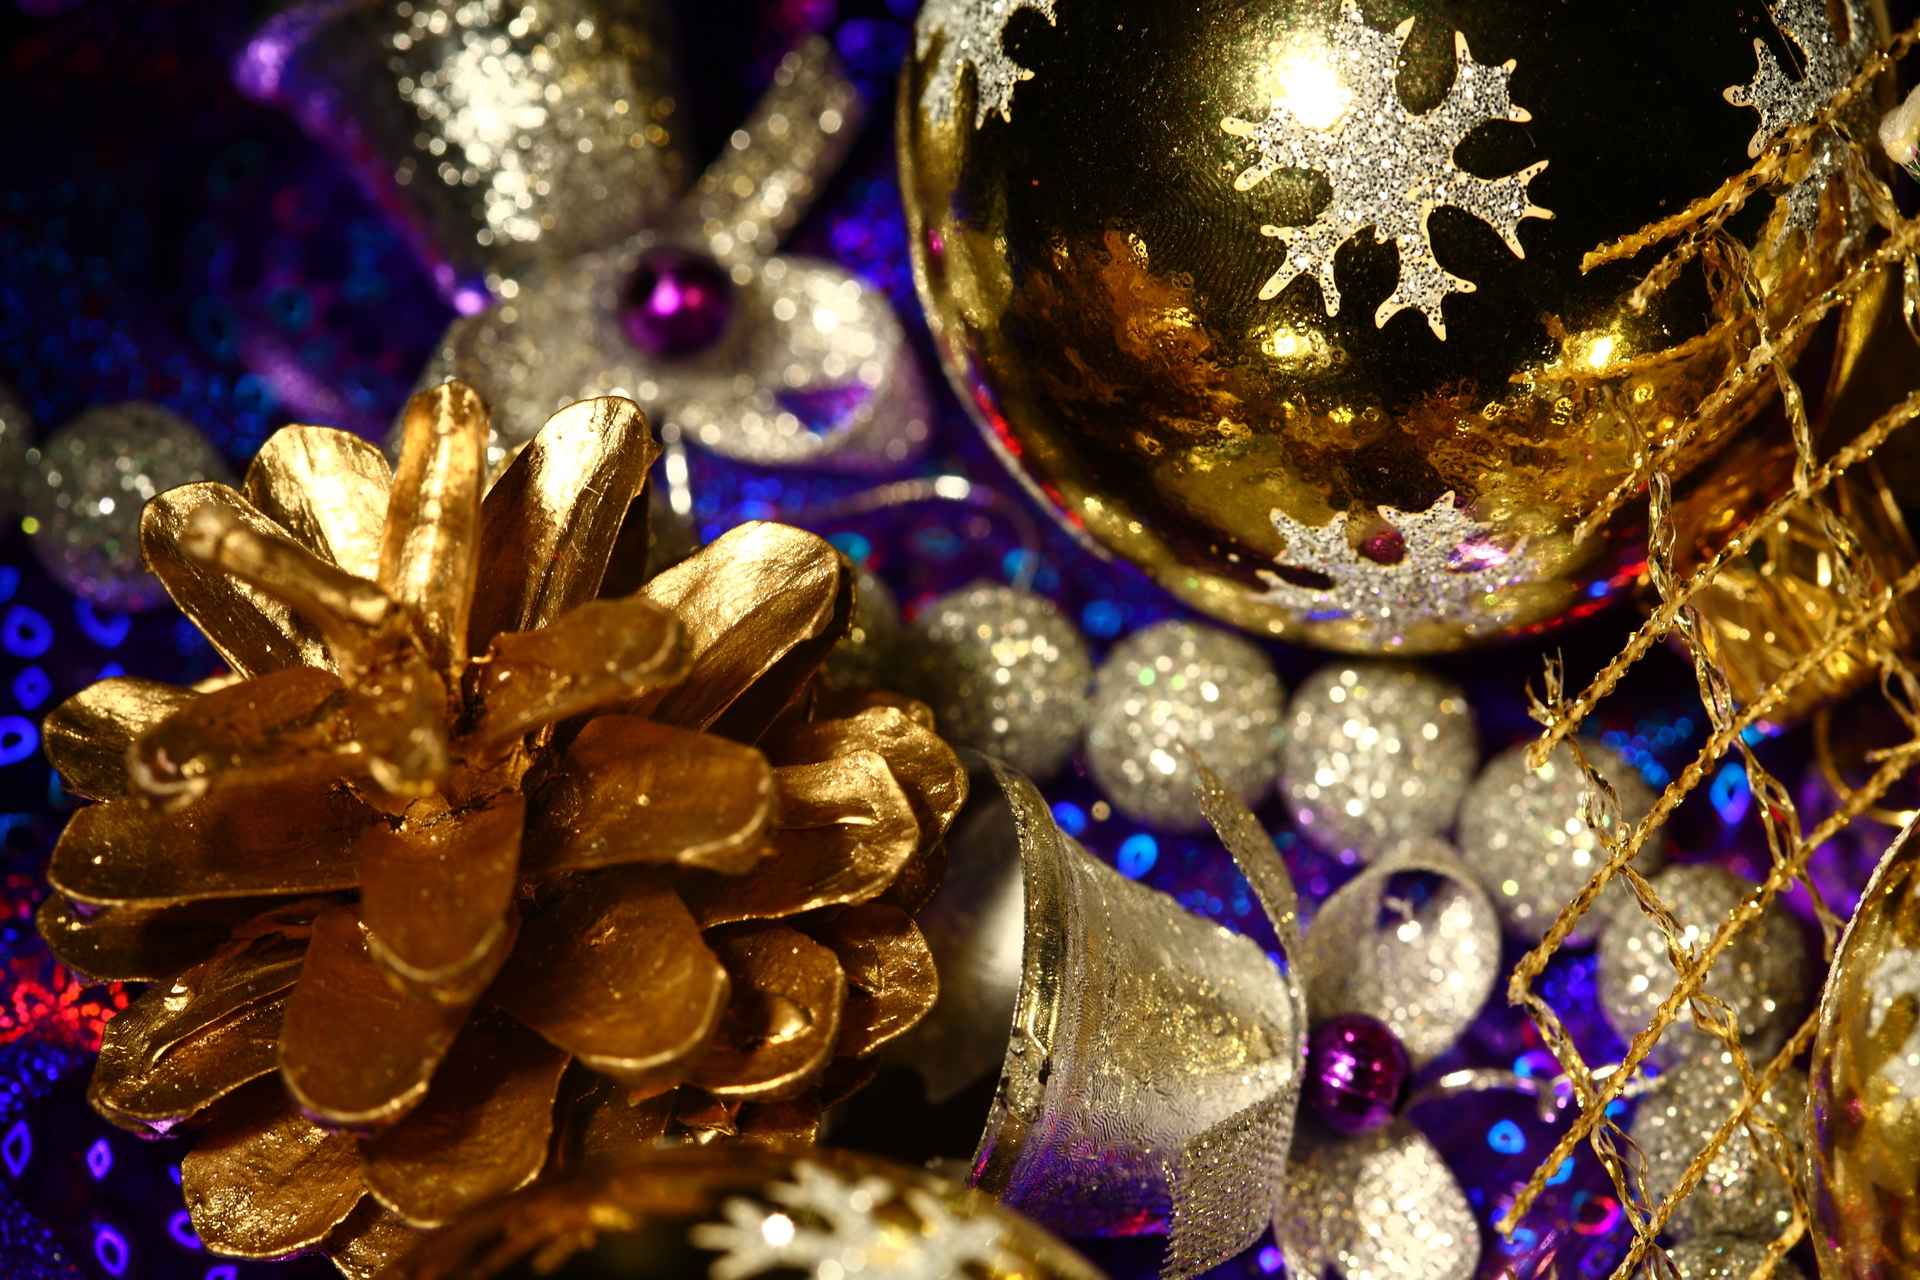 Скачать обои бесплатно Рождество (Christmas Xmas), Игрушки, Праздники, Новый Год (New Year) картинка на рабочий стол ПК